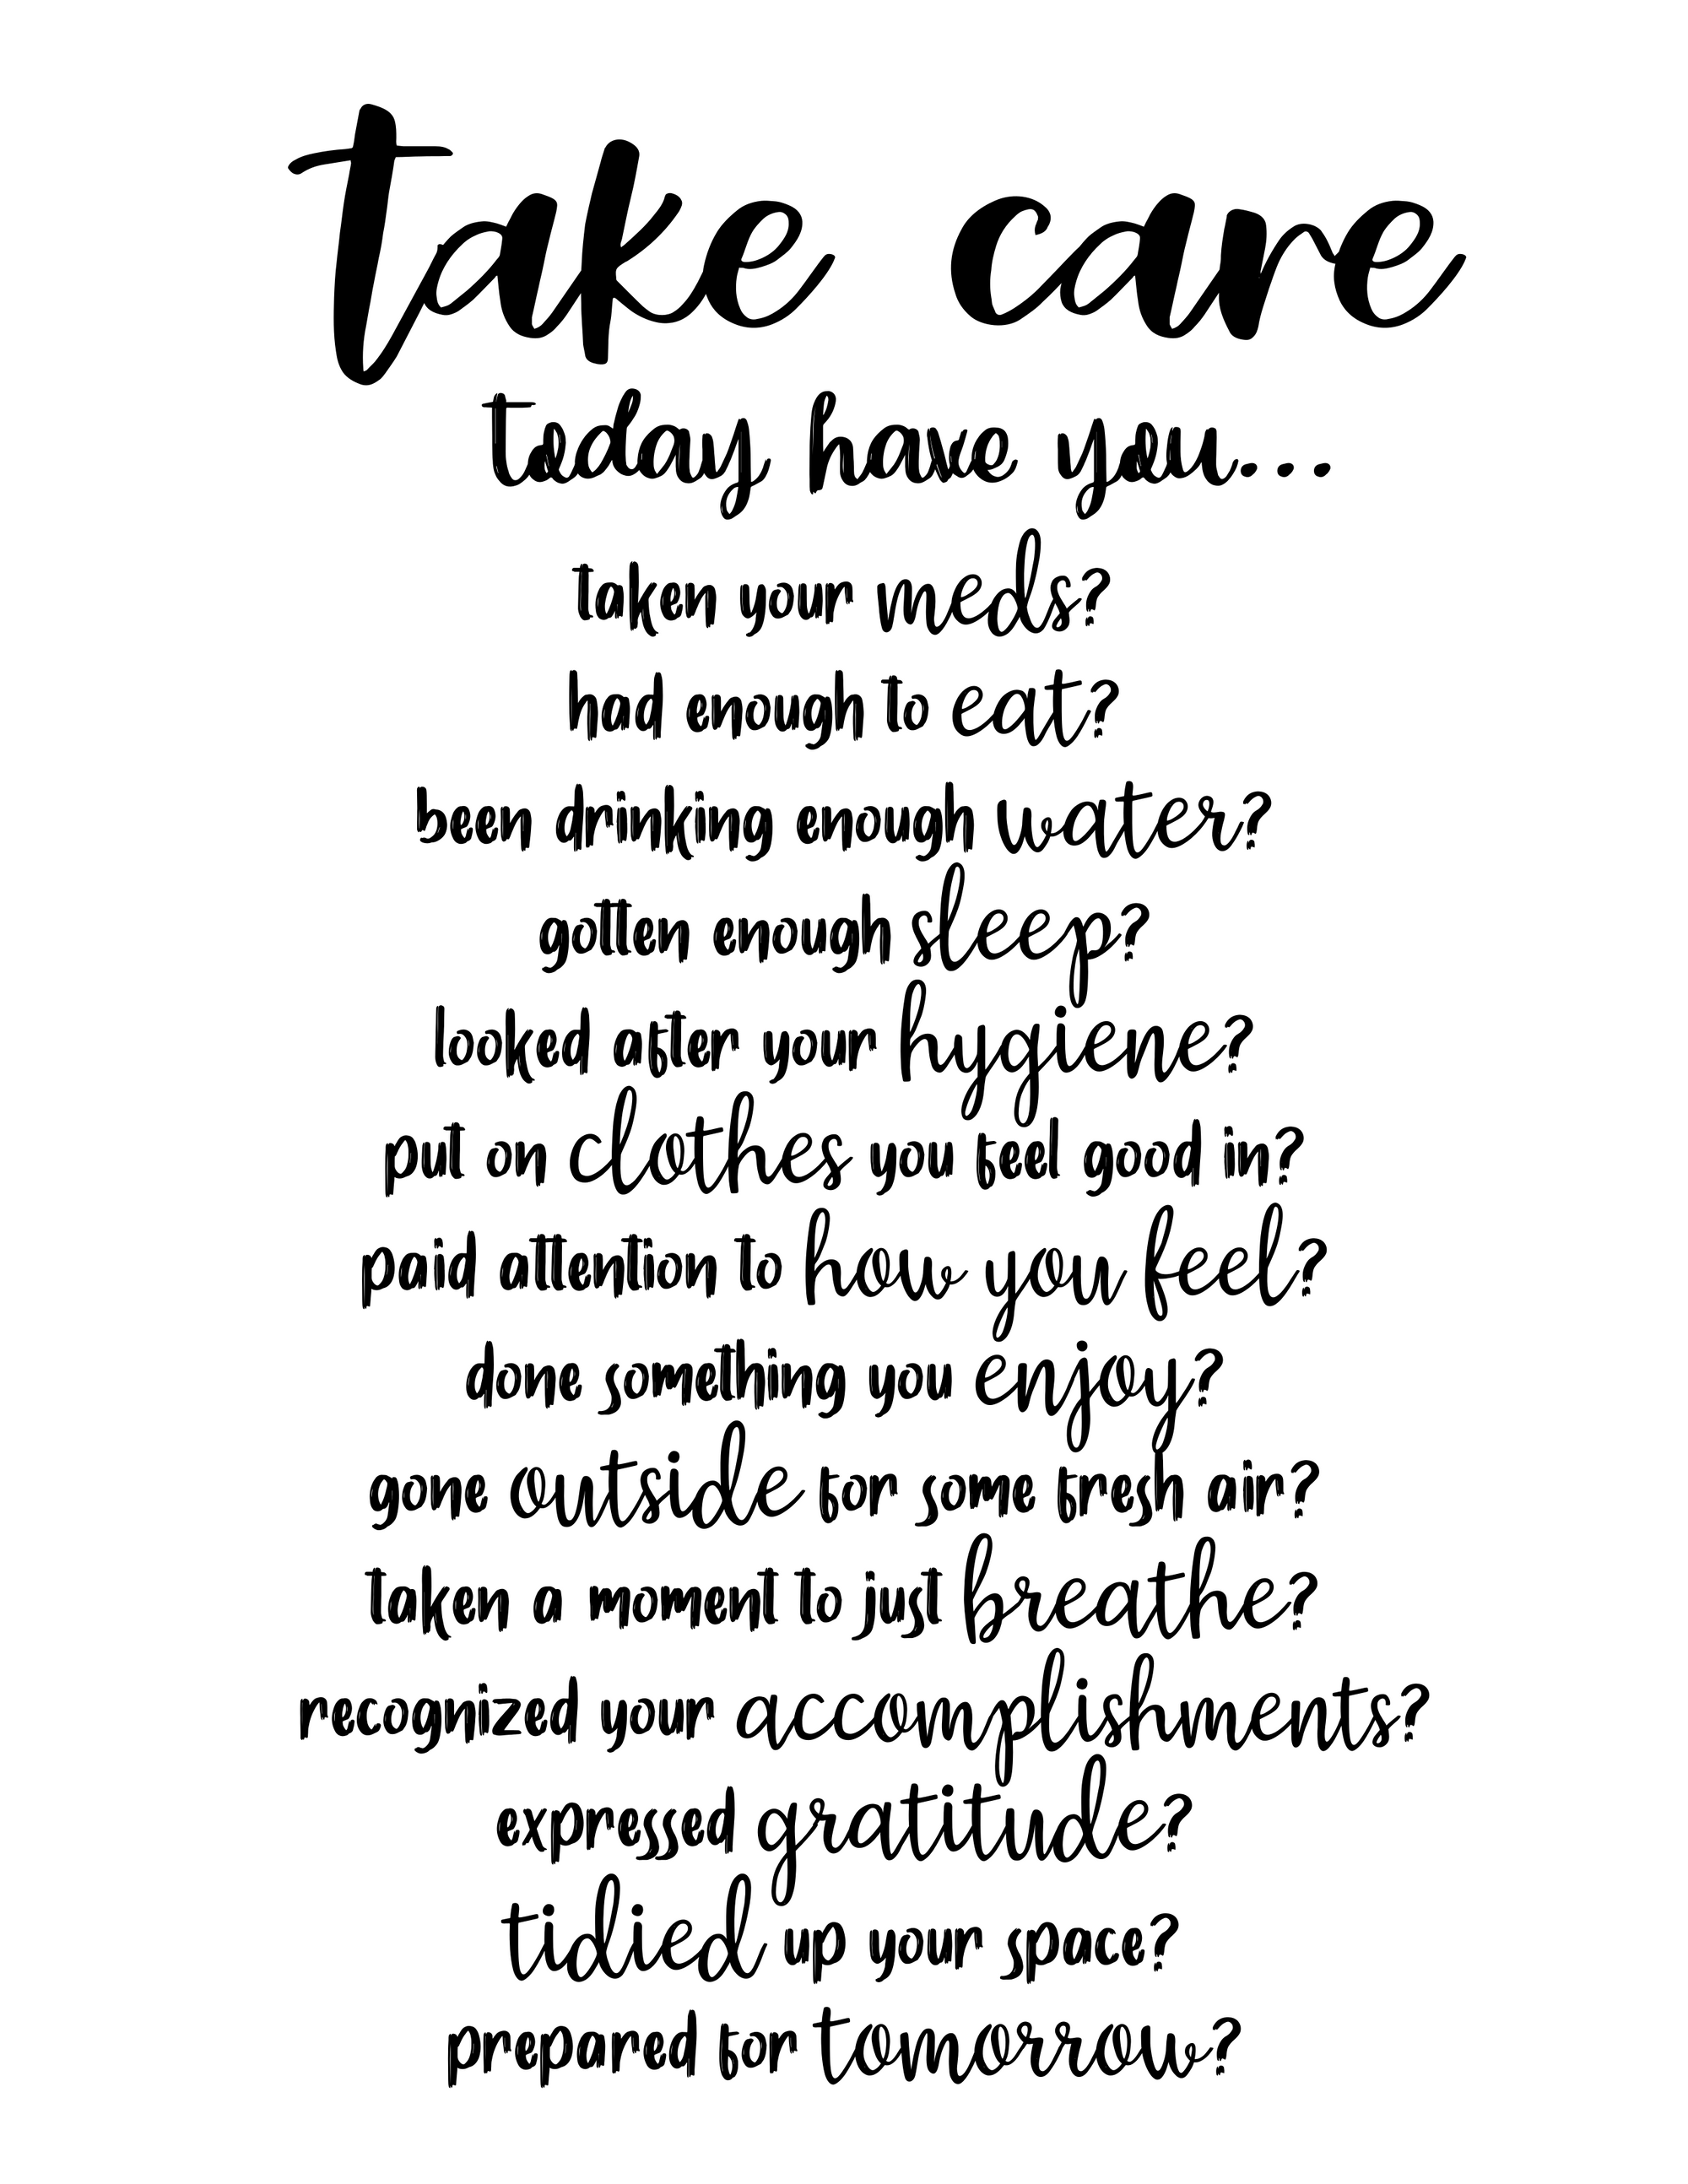 Self-care checklist